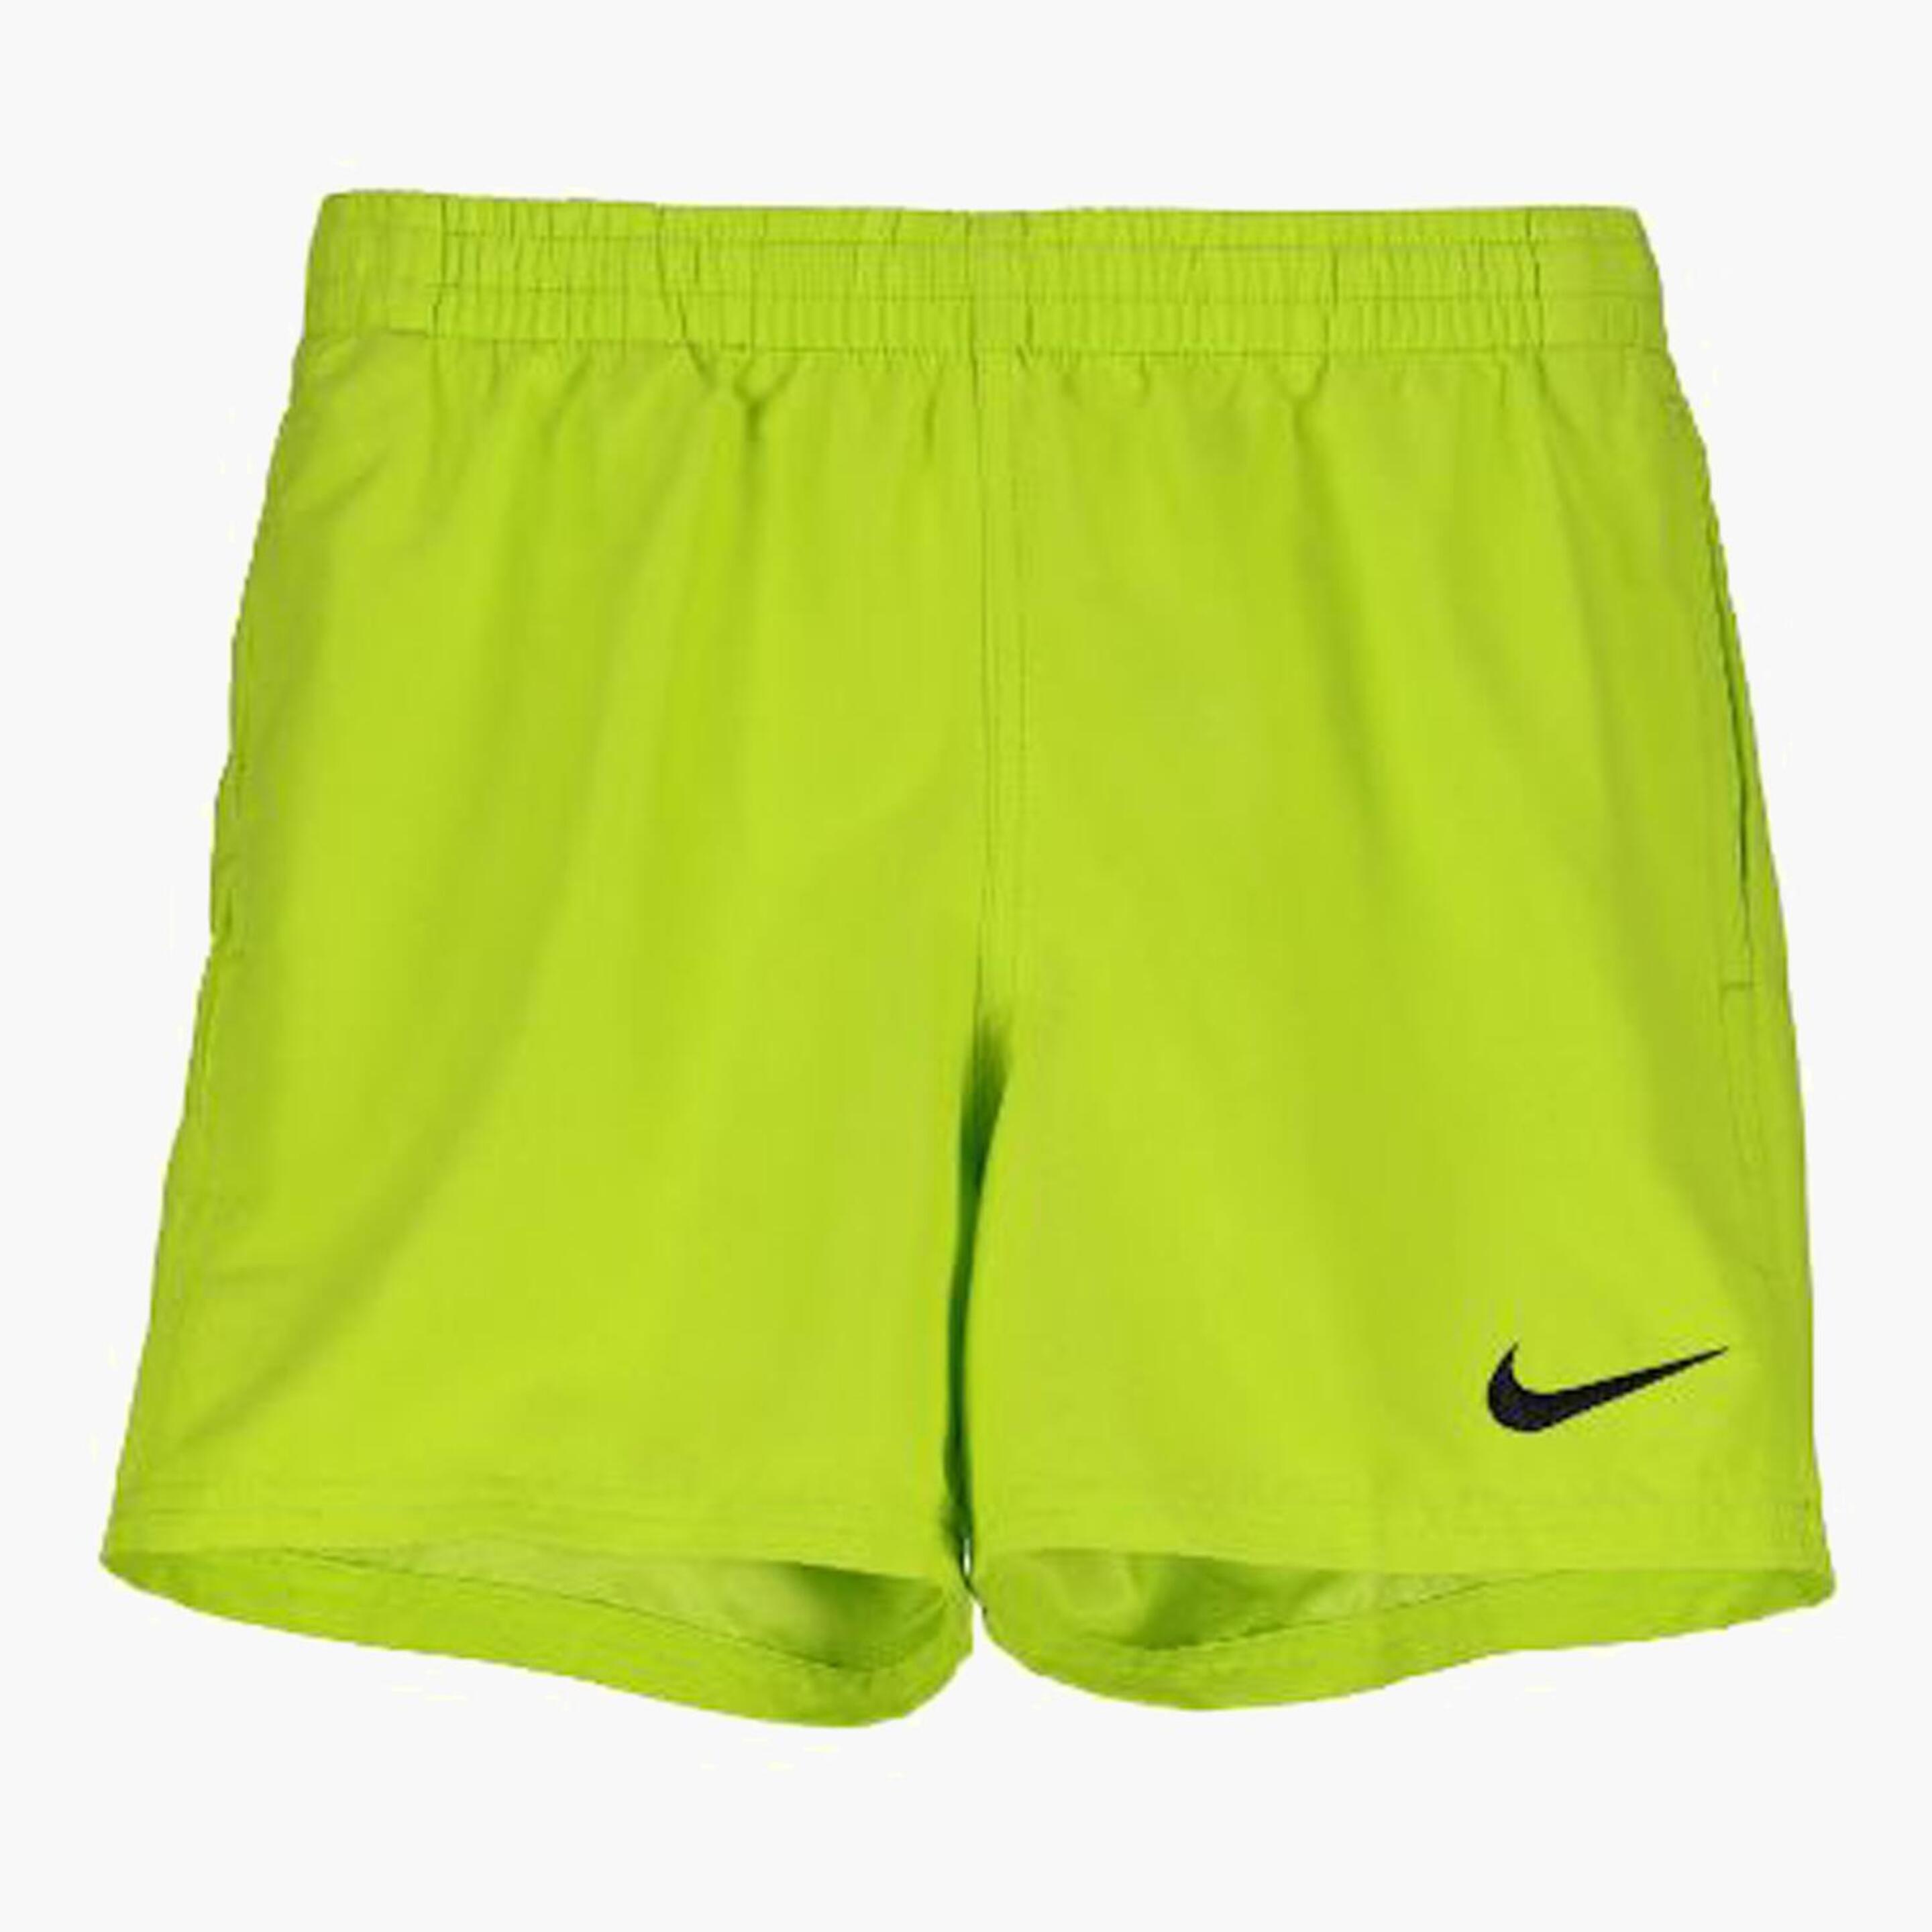 Bañador Nike - verde - Bañador Chico